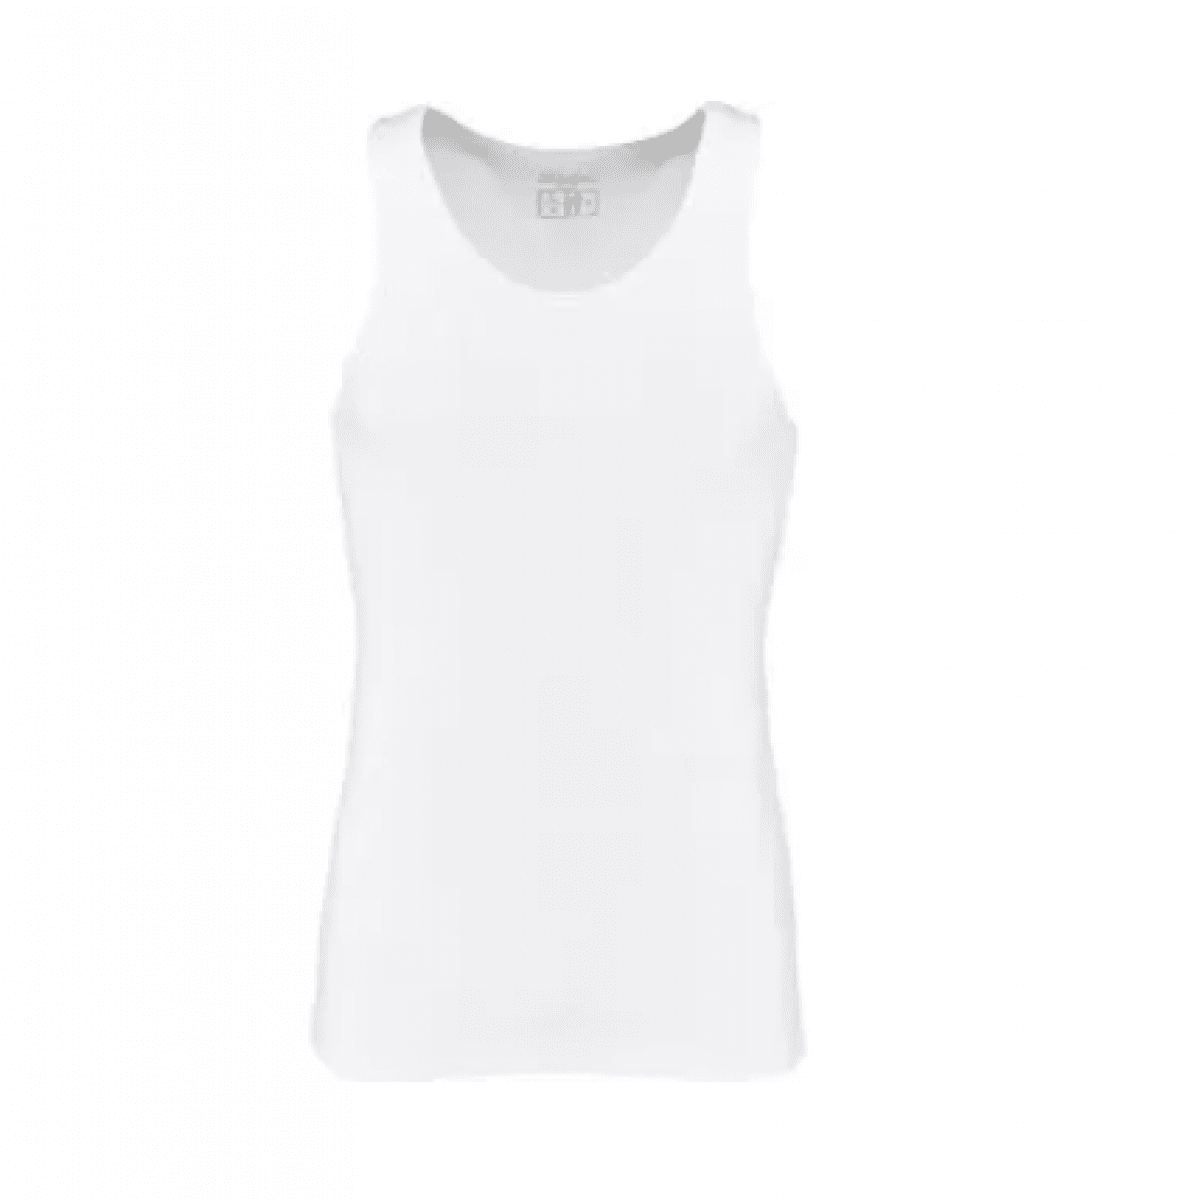 GK/KW13104875056 Biele tričko XL, 2 ks